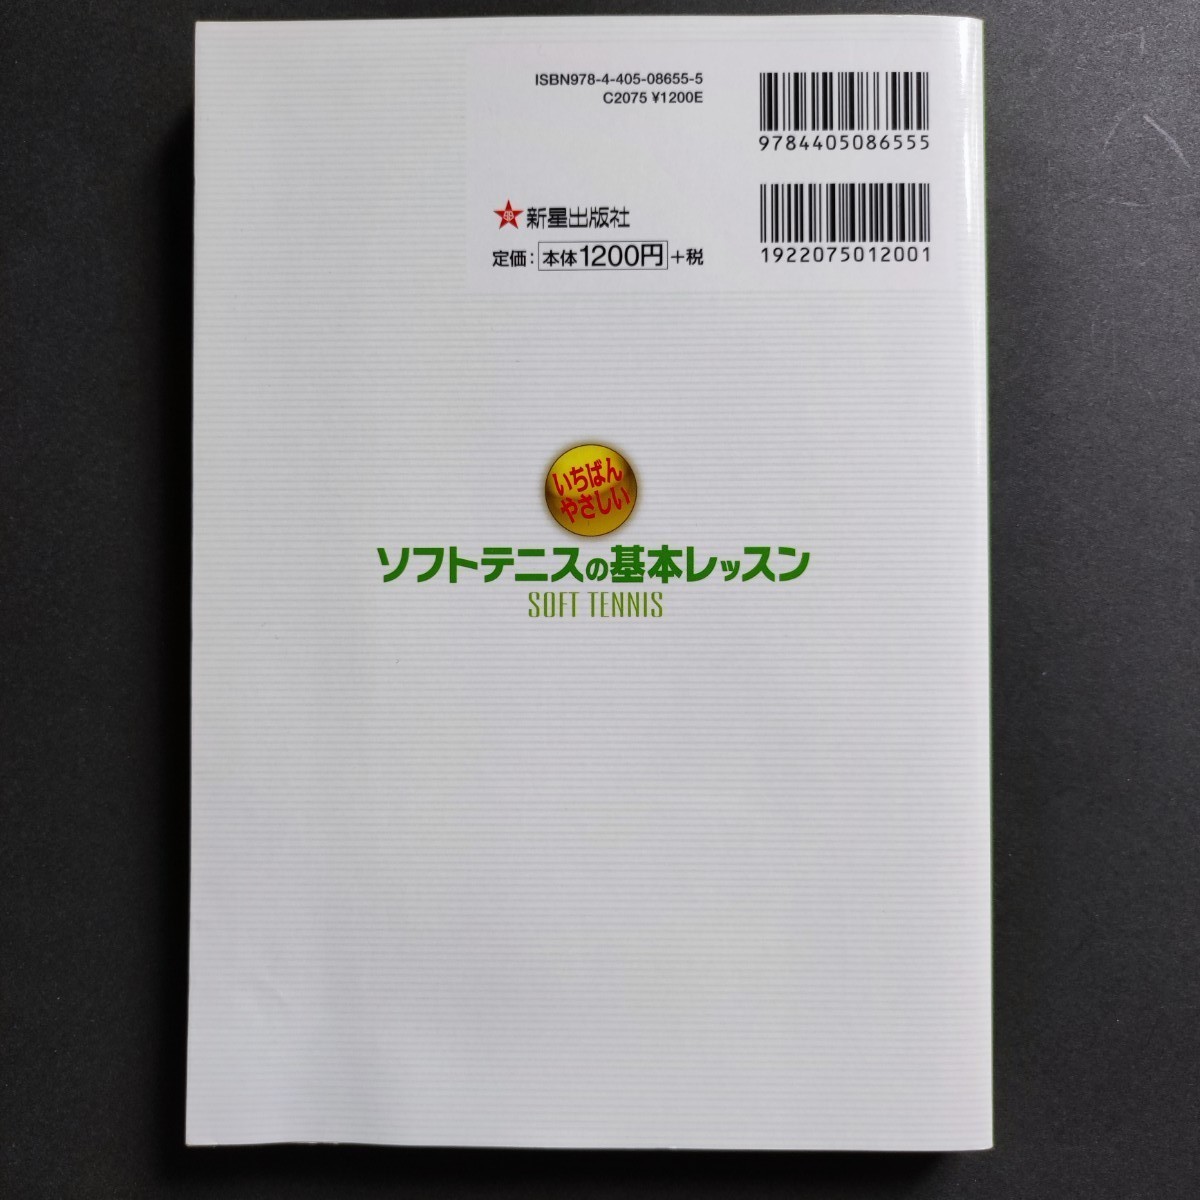 いちばんやさしいソフトテニスの基本レッスン 書籍 本 新星出版社 西田豊明監修 テニス